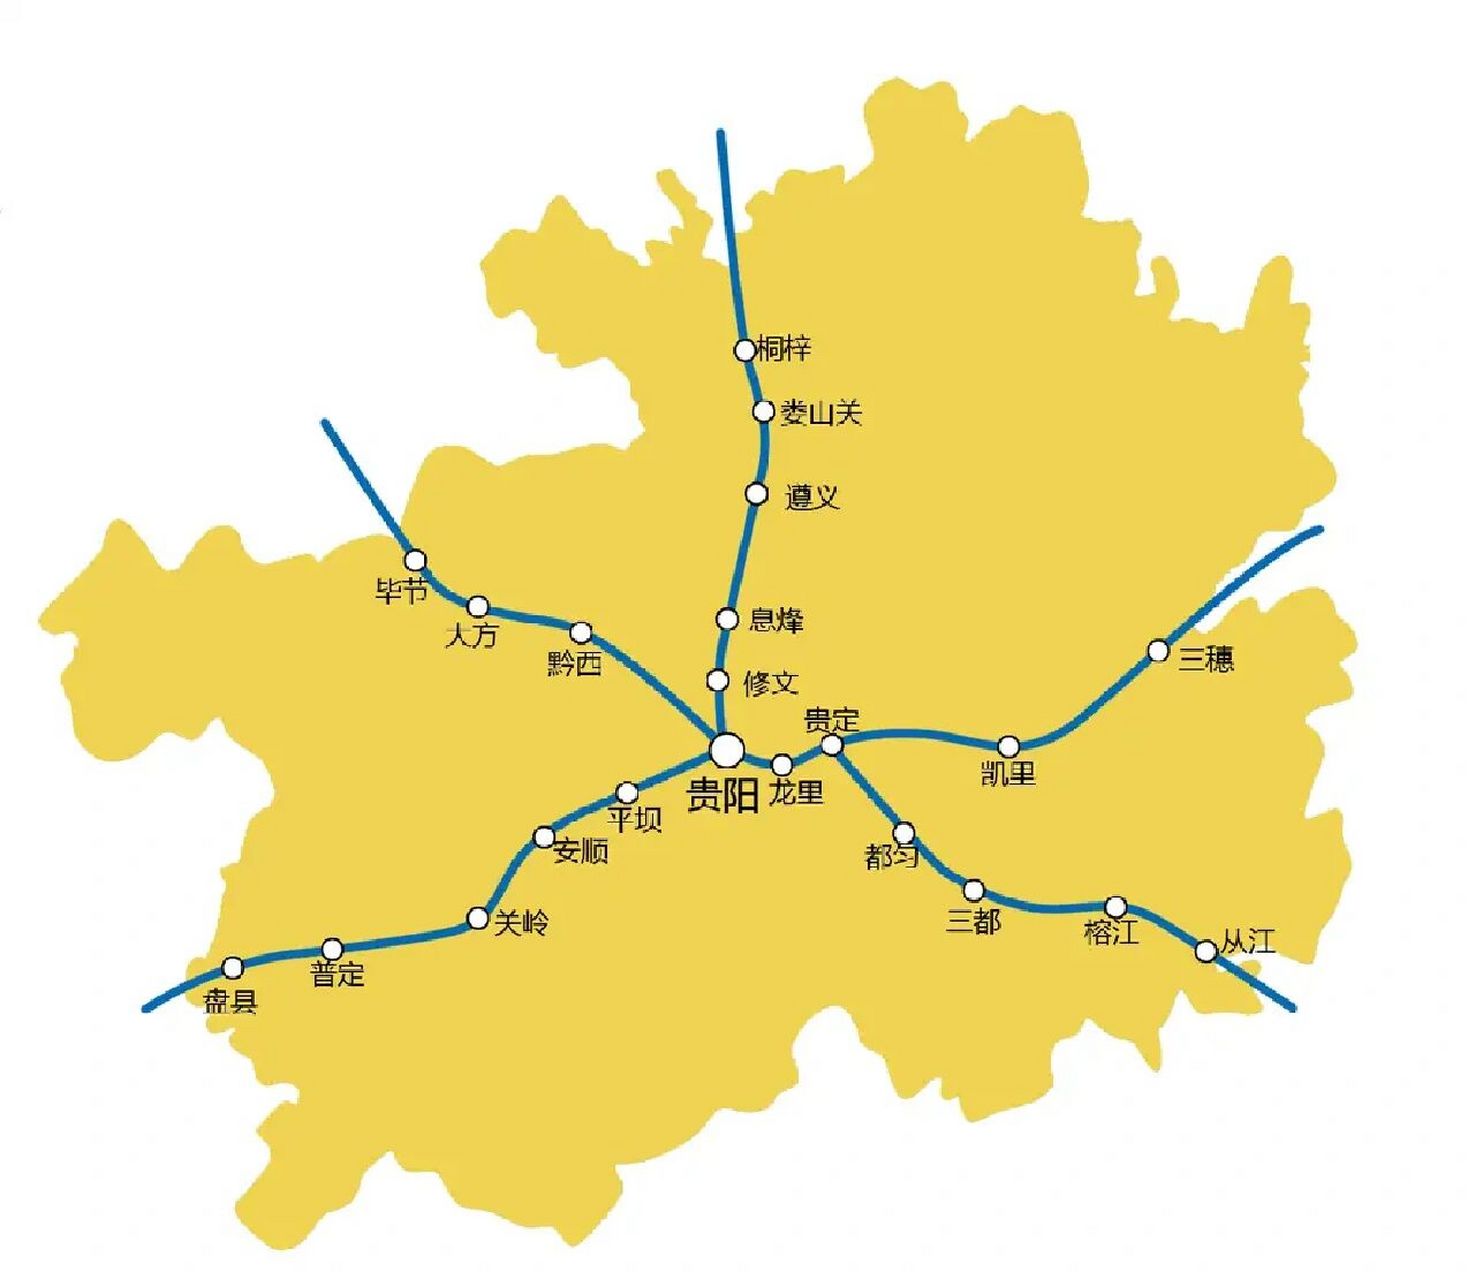 全国高铁线路图,各省请自行查找～(上) 全国铁路营业里程从2012年的9